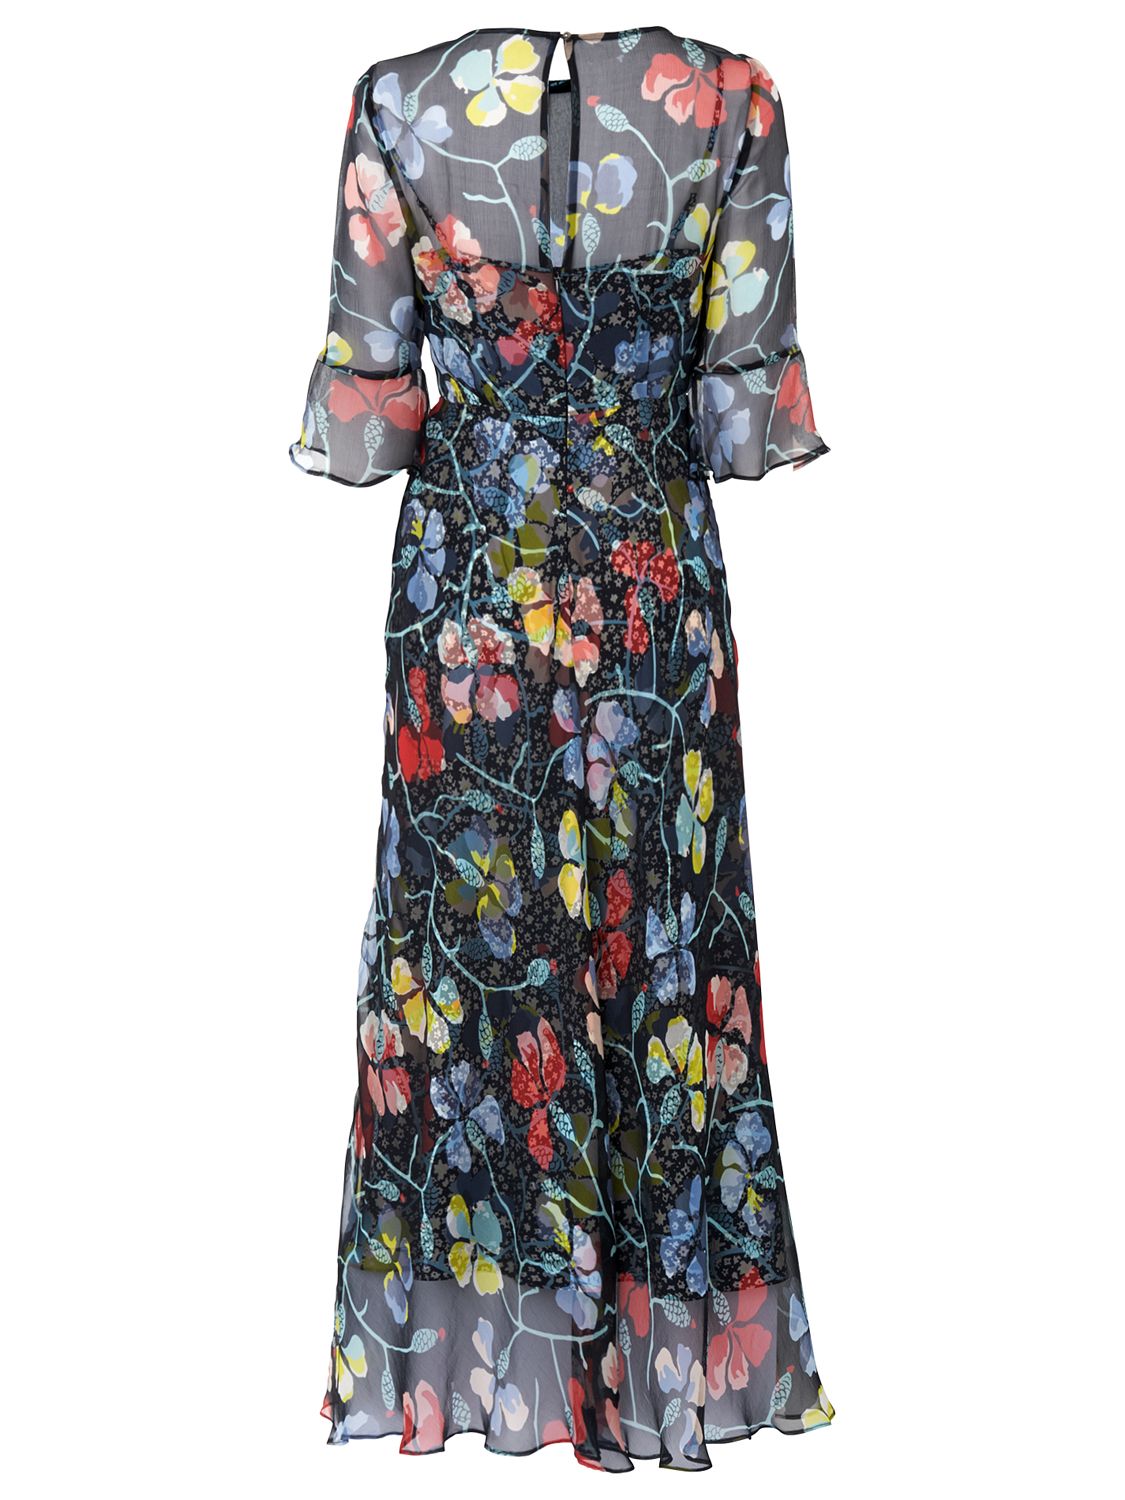 L.K. Bennett Phia Soft Floral Print Silk Dress, Multi